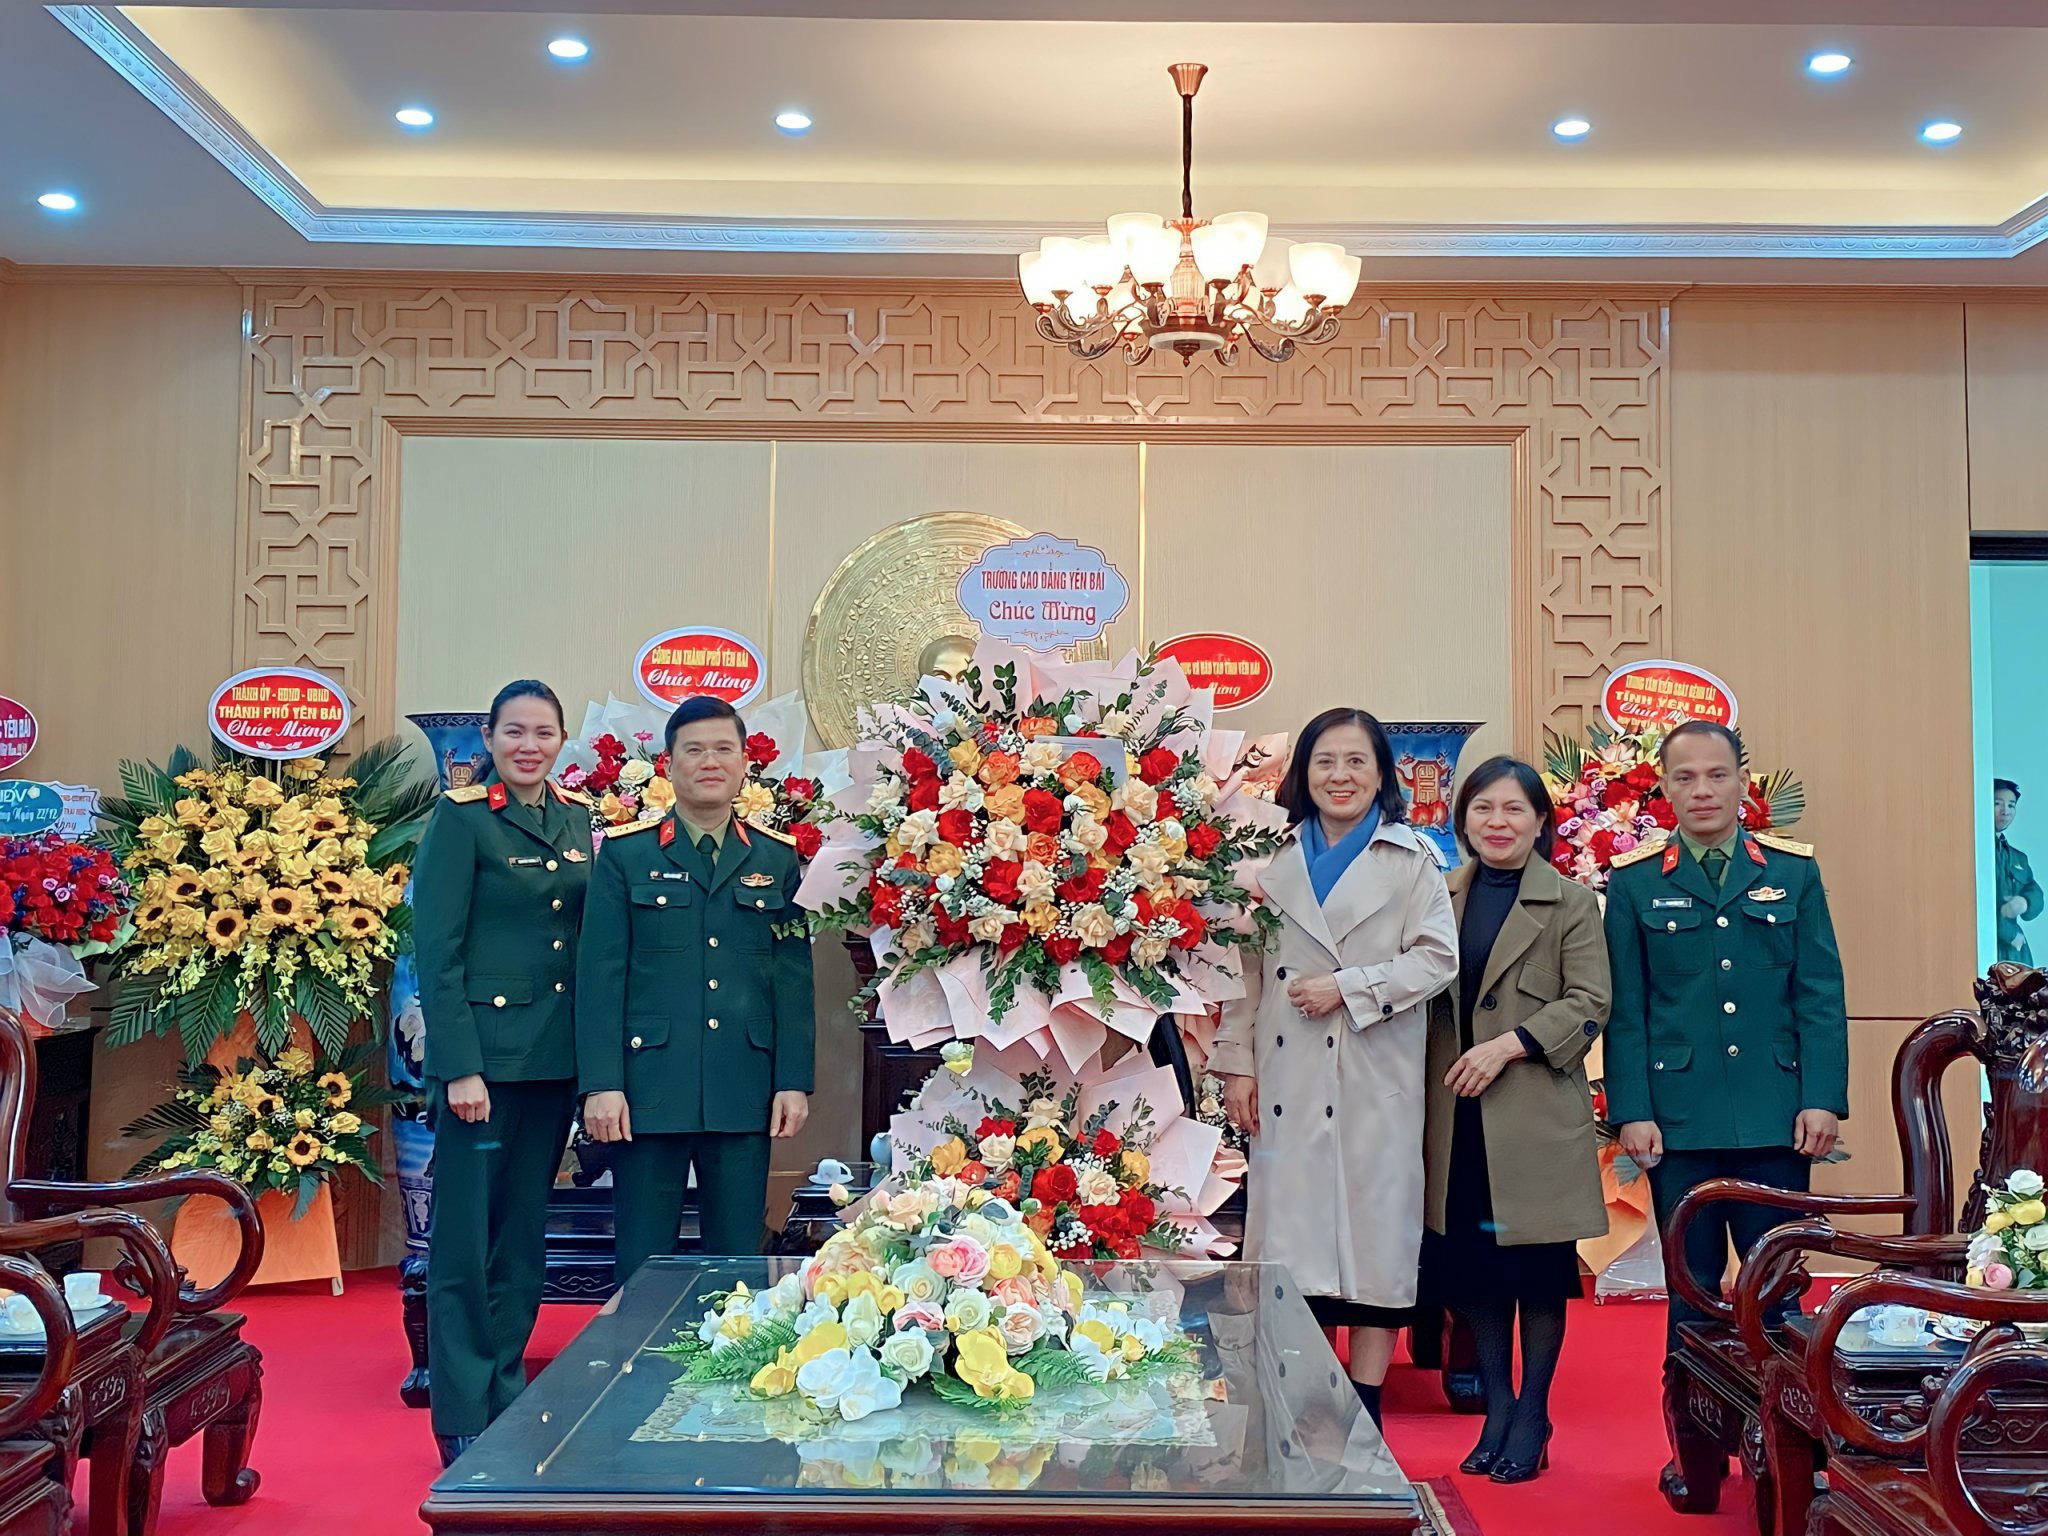 Trường Cao đẳng Yên Bái tặng hoa và chúc mừng các đơn vị Quân đội nhân kỷ niệm 79 năm Ngày thành lập Quân đội Nhân dân Việt Nam (22/12/1944 - 22/12/2023), 34 năm Ngày hội Quốc phòng toàn dân